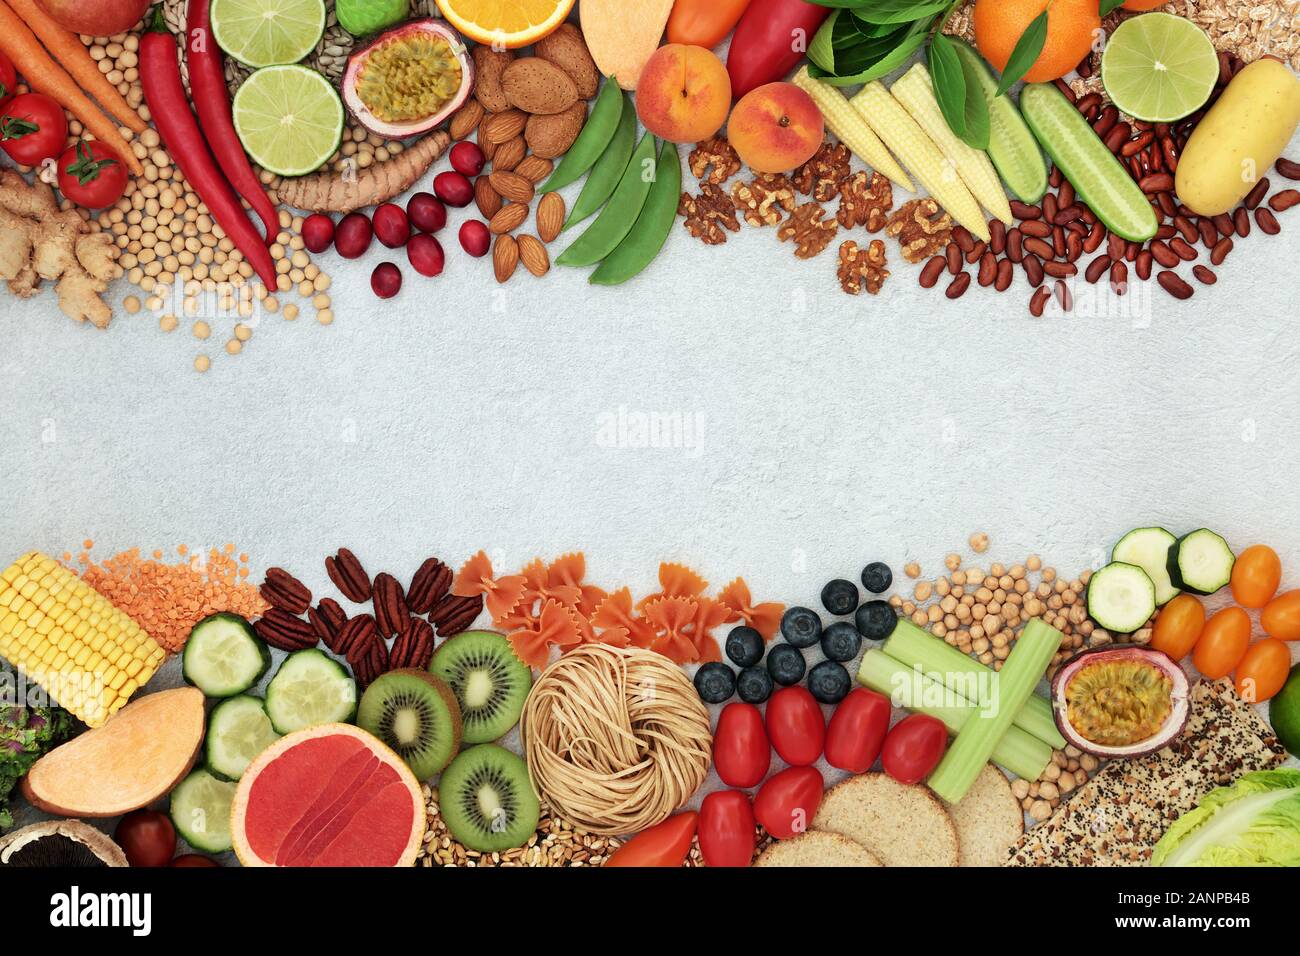 Bordure de l'arrière-plan de l'alimentation santé végétaliens avec une grande collection d'aliments. Riche en protéines, vitamines, antioxydants, les anthocyanes, fibres, oméga 3 et minéraux Banque D'Images